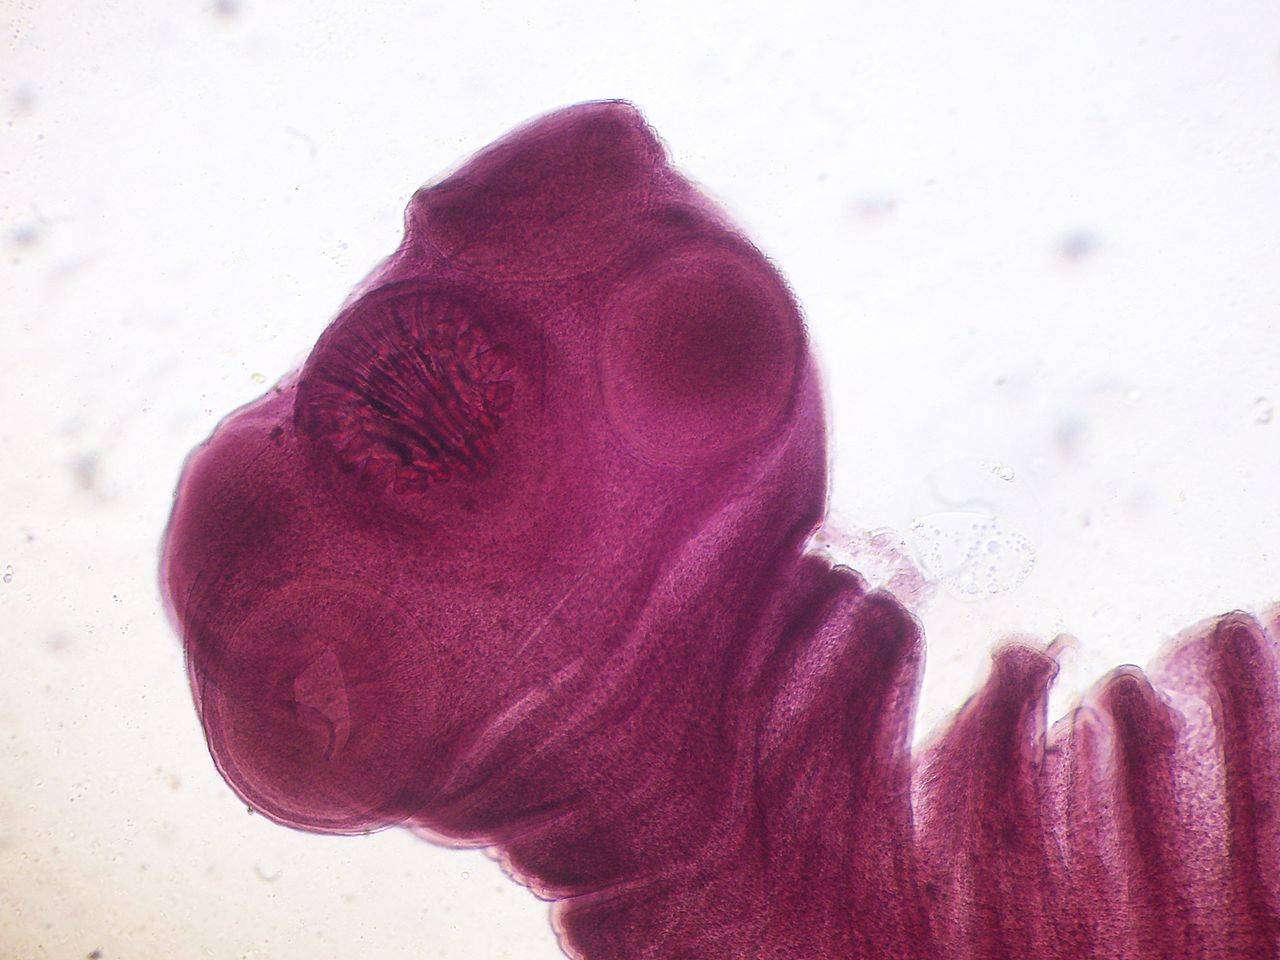 etapas larvales o intermedias de desarrollo de la tenia porcina